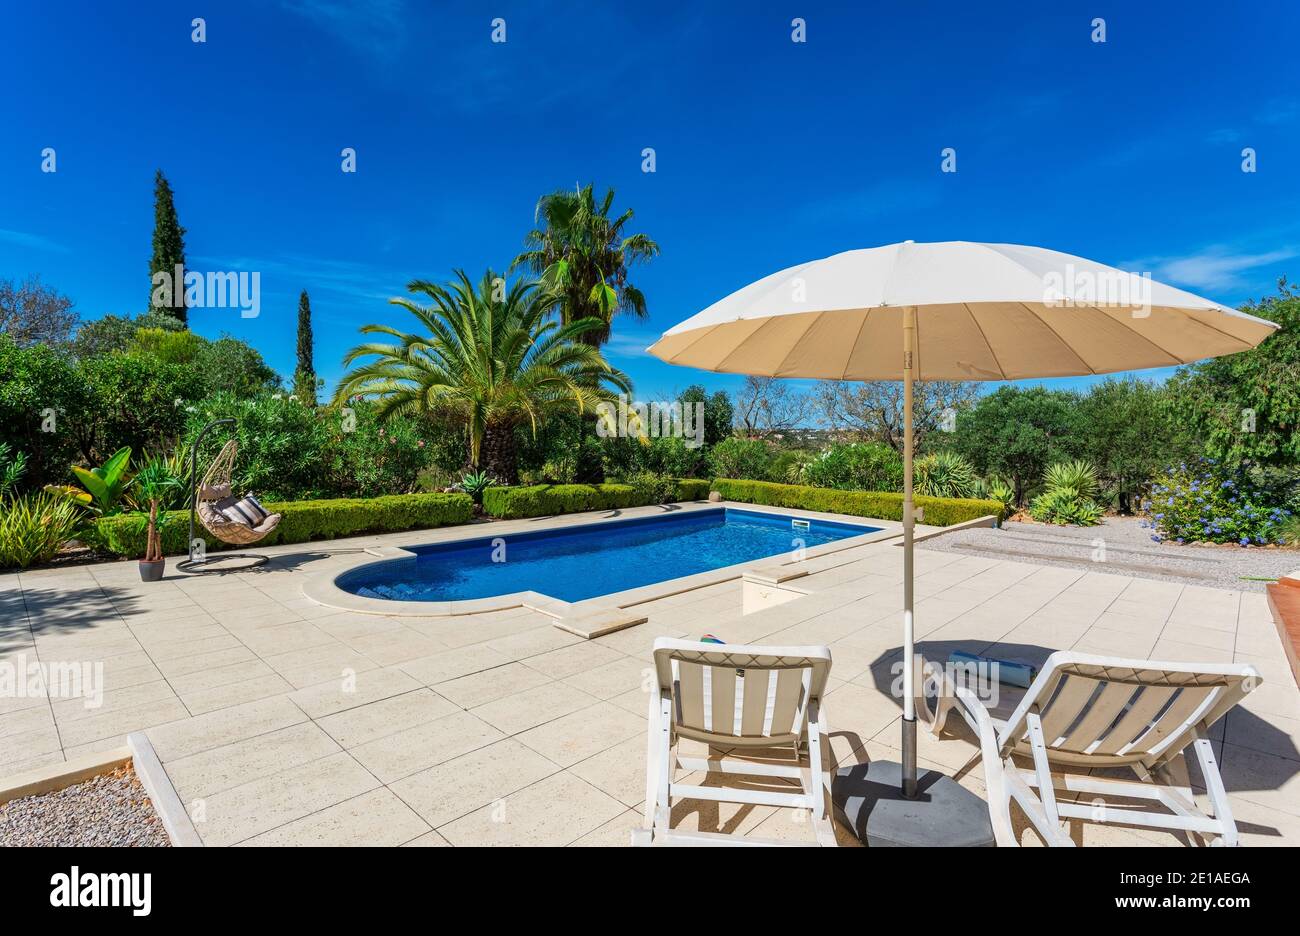 Piscina con ombrellone a bordo piscina e lettini. Cielo azzurro e splendidi alberi sullo sfondo in una bella giornata estiva. Foto Stock